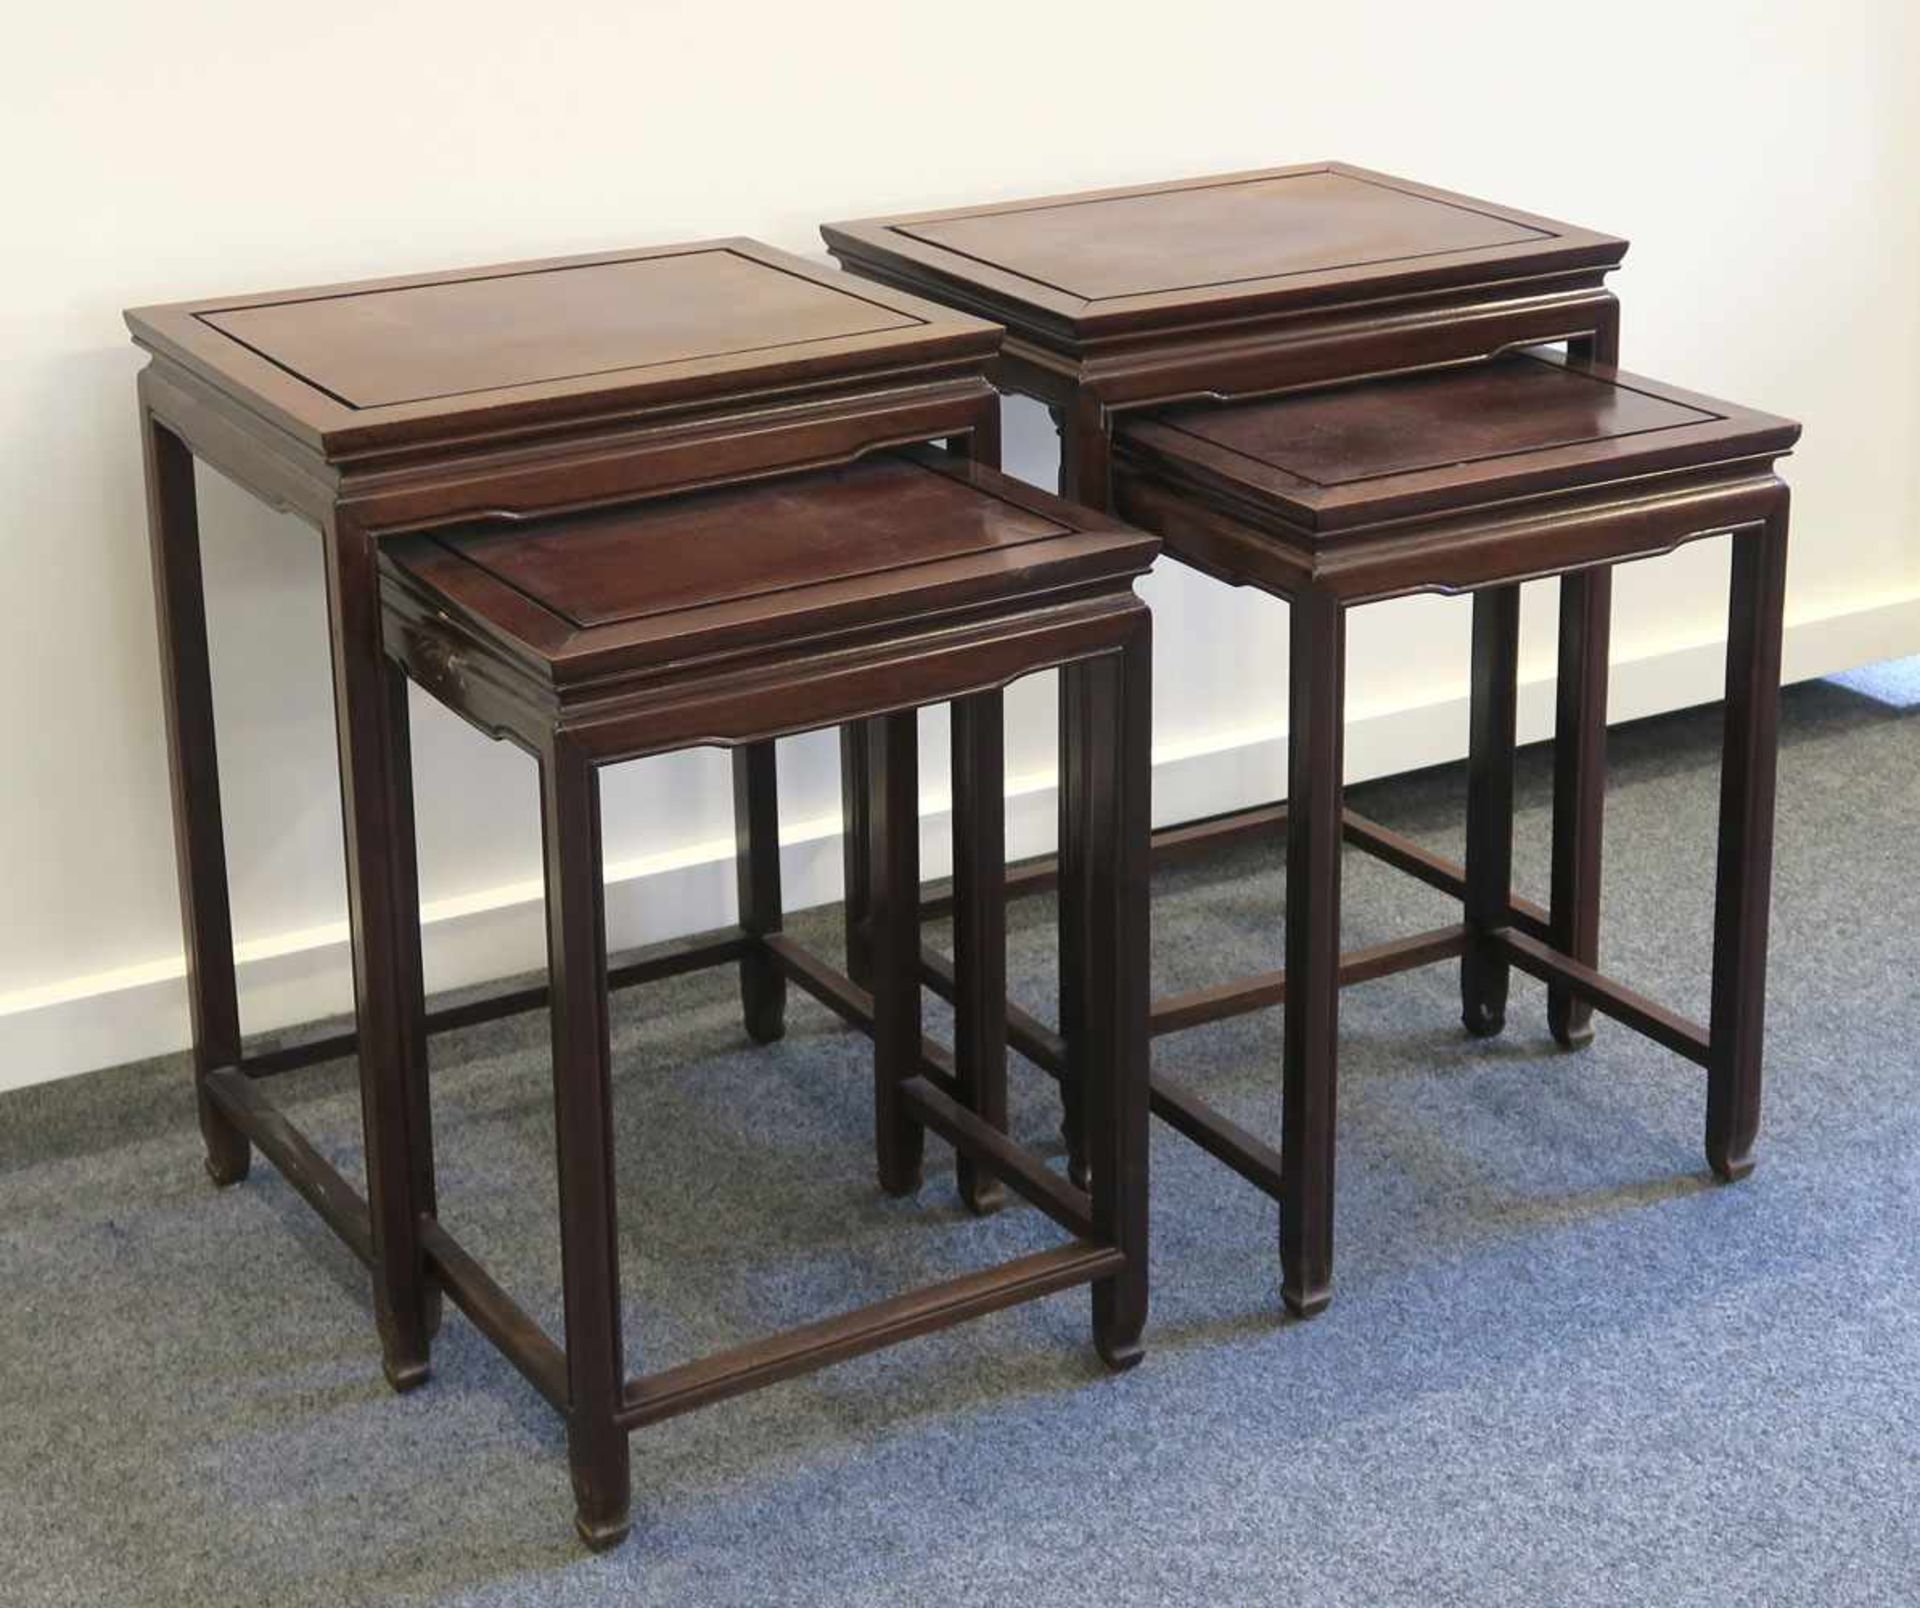 Paar SatztischeWohl China. Hartholz. Jeweils zwei ineinanderpassende Tische. H. 57 bzw. 66 cm.